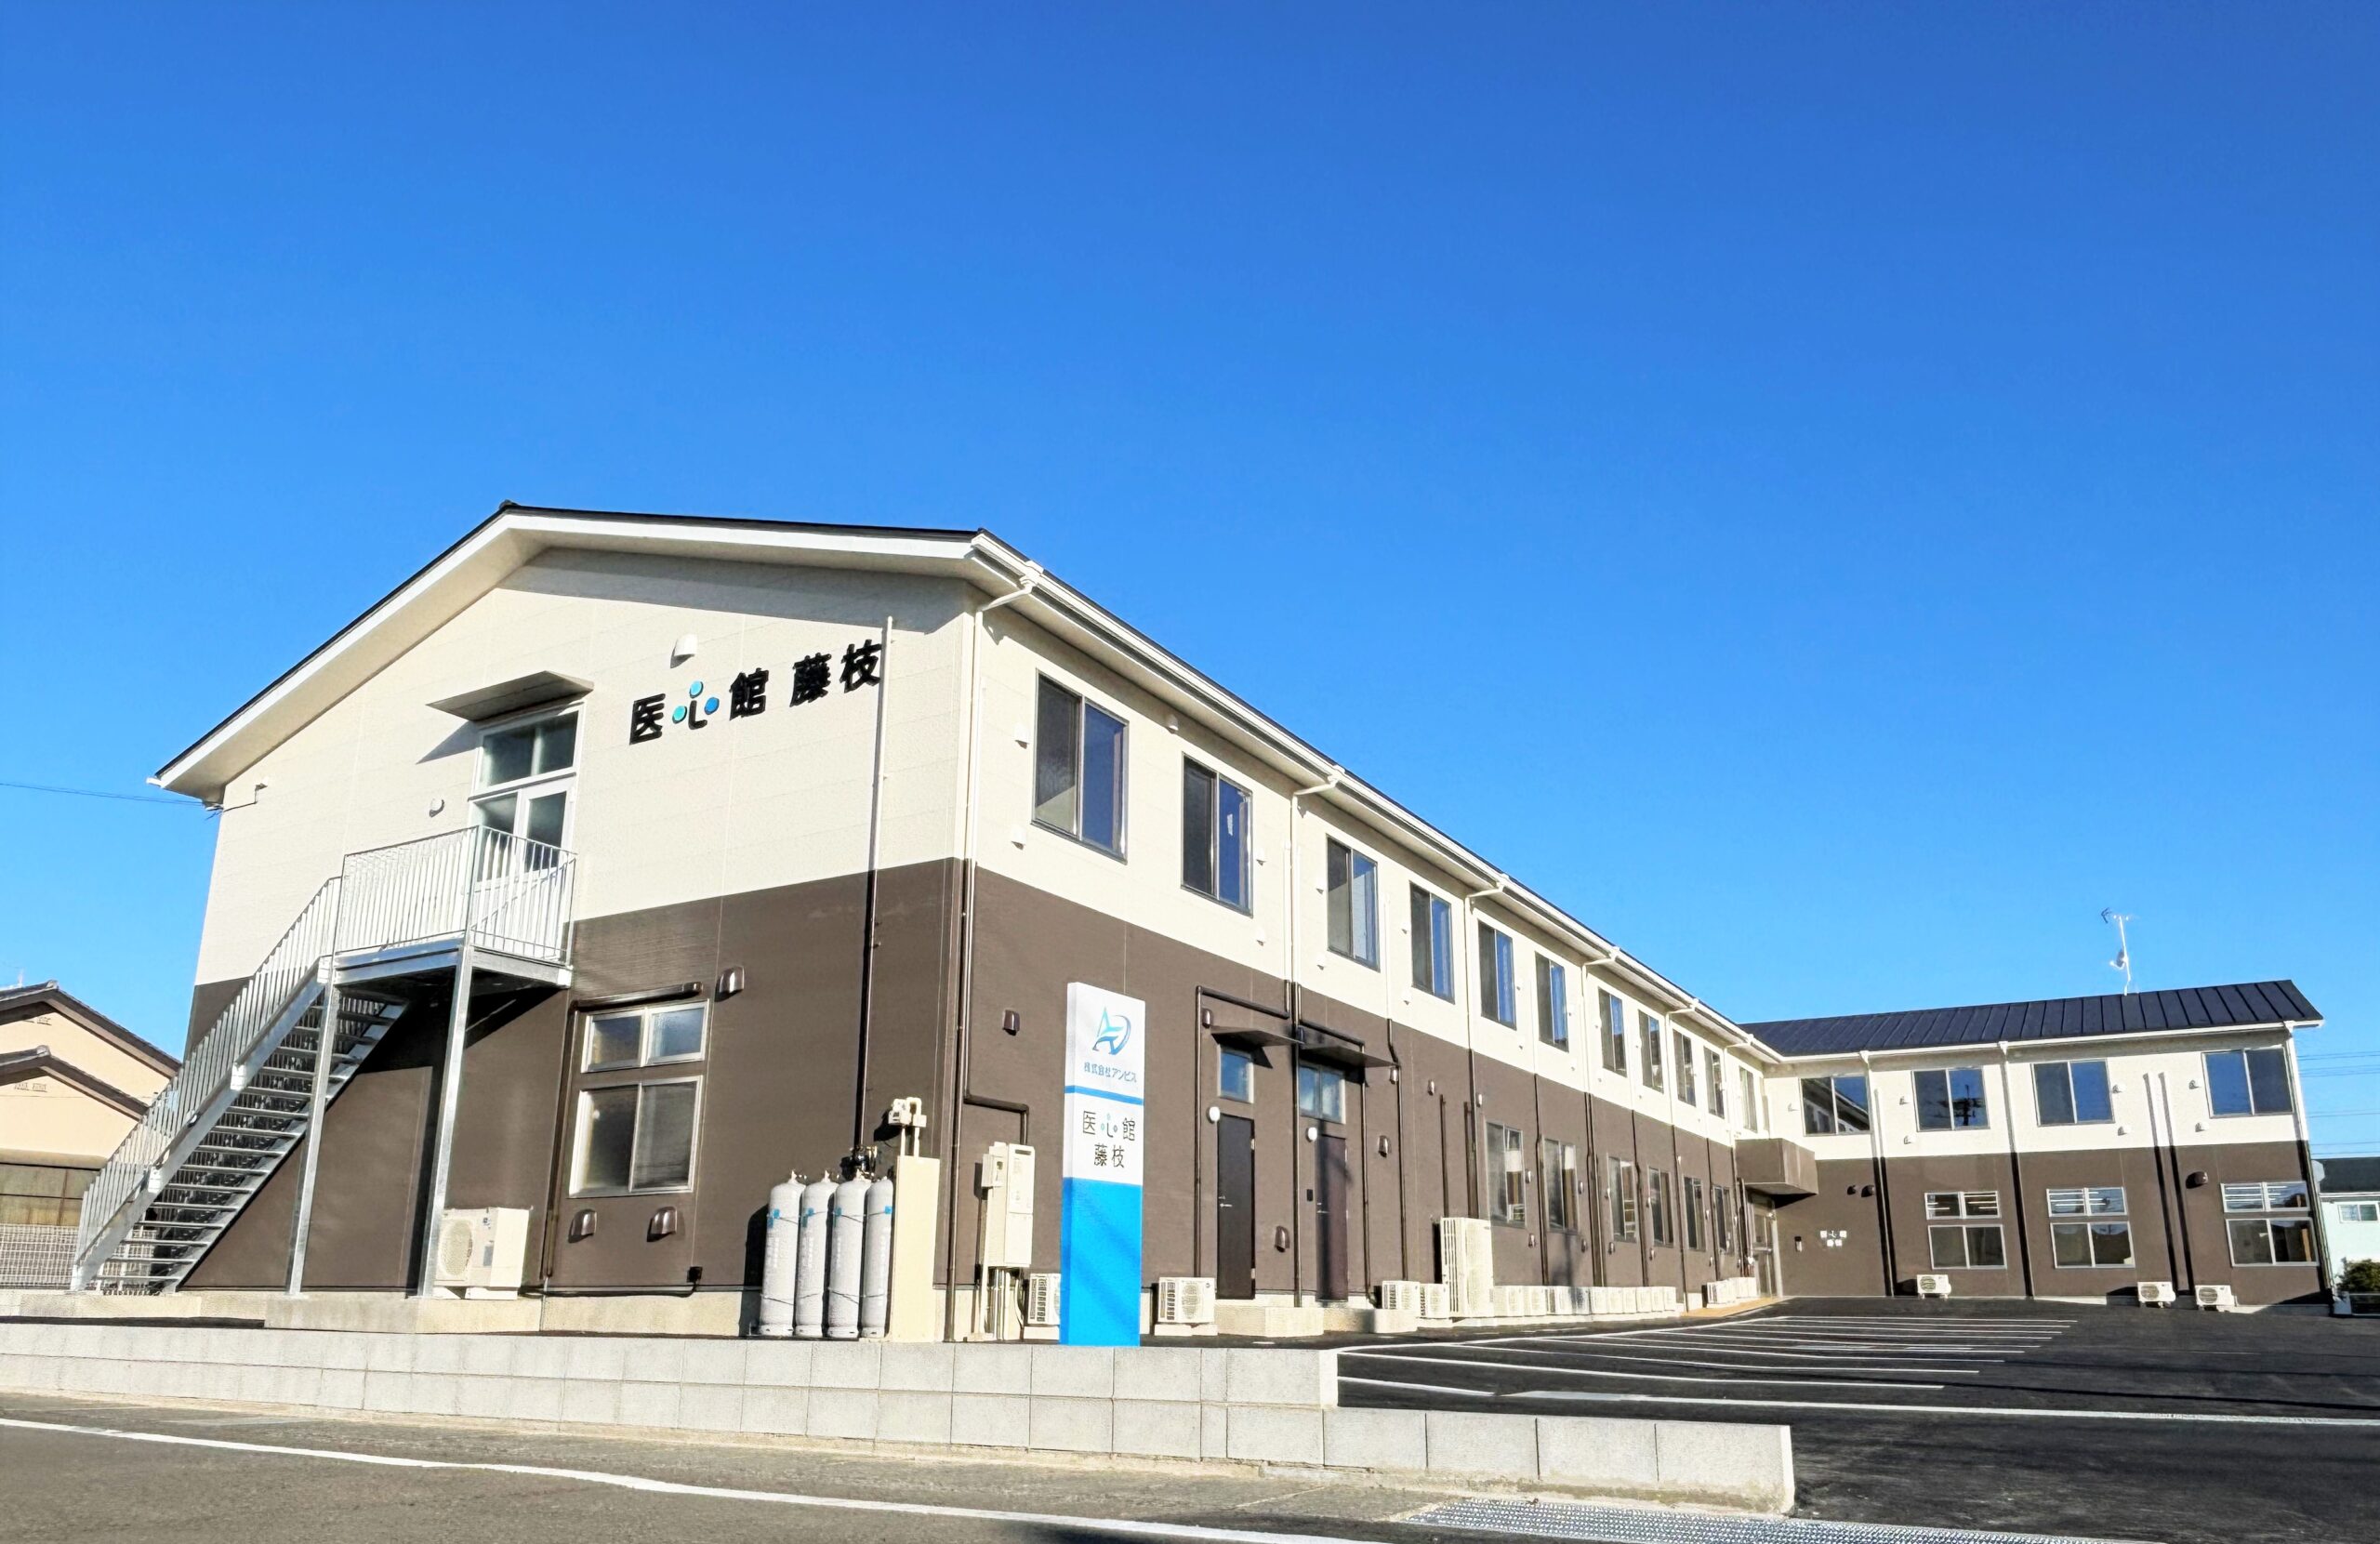 静岡県では６施設目となる 有料老人ホーム「医心館 藤枝」をオープンしました